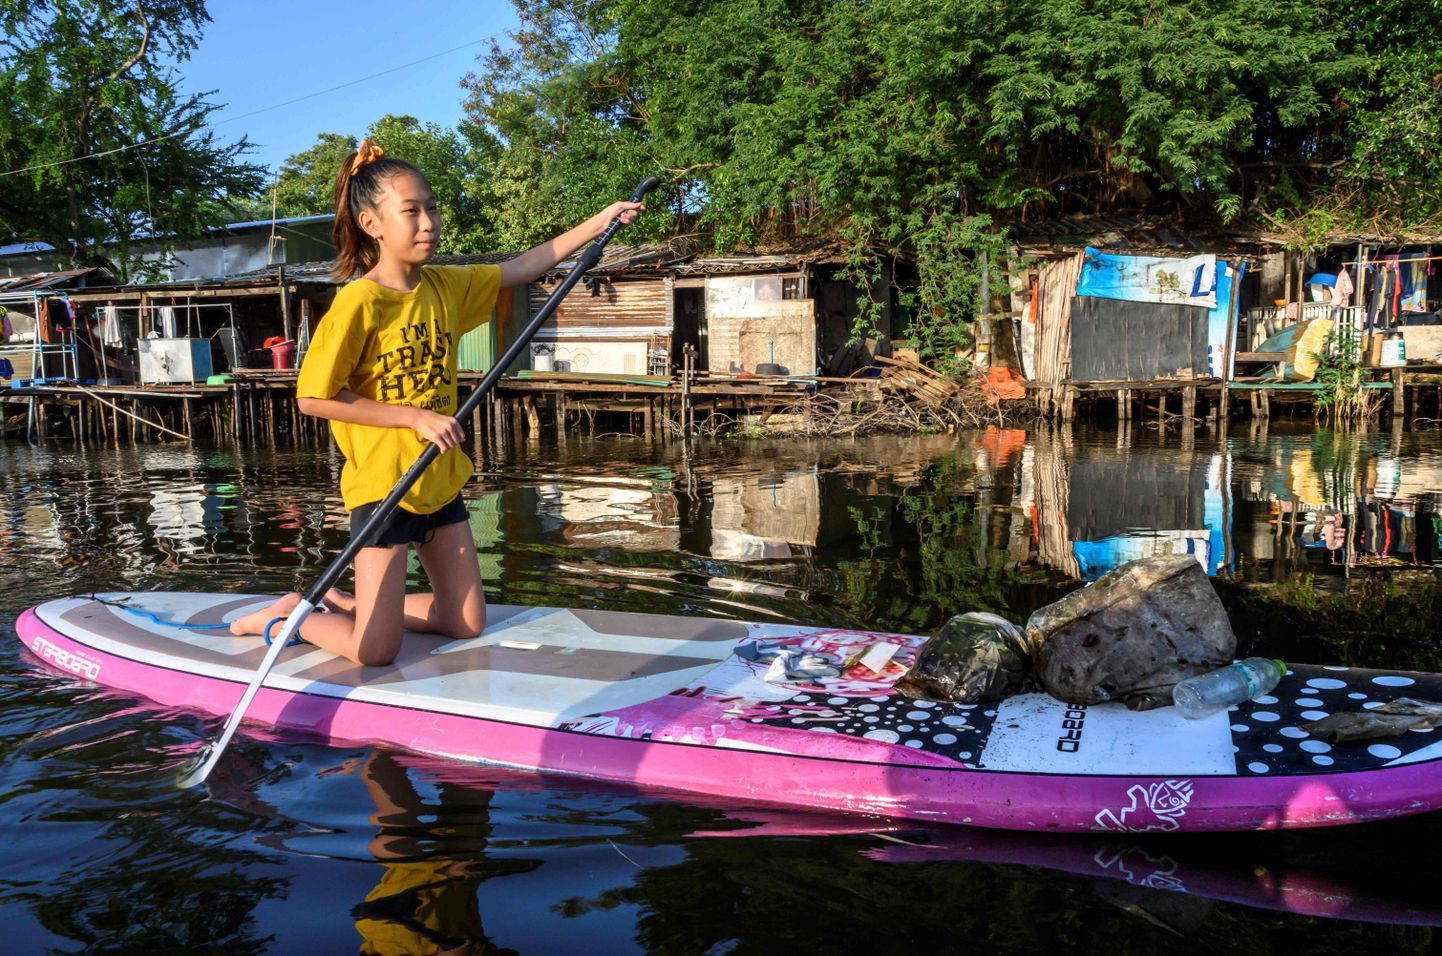 12-aastane Ralyn Satidtanasarn, tuntud oma hüüdnimega Lilly, sõitmas aerulaual Bangkoki kanalil, õngitsedes räpasest veest välja plasträmpsu.